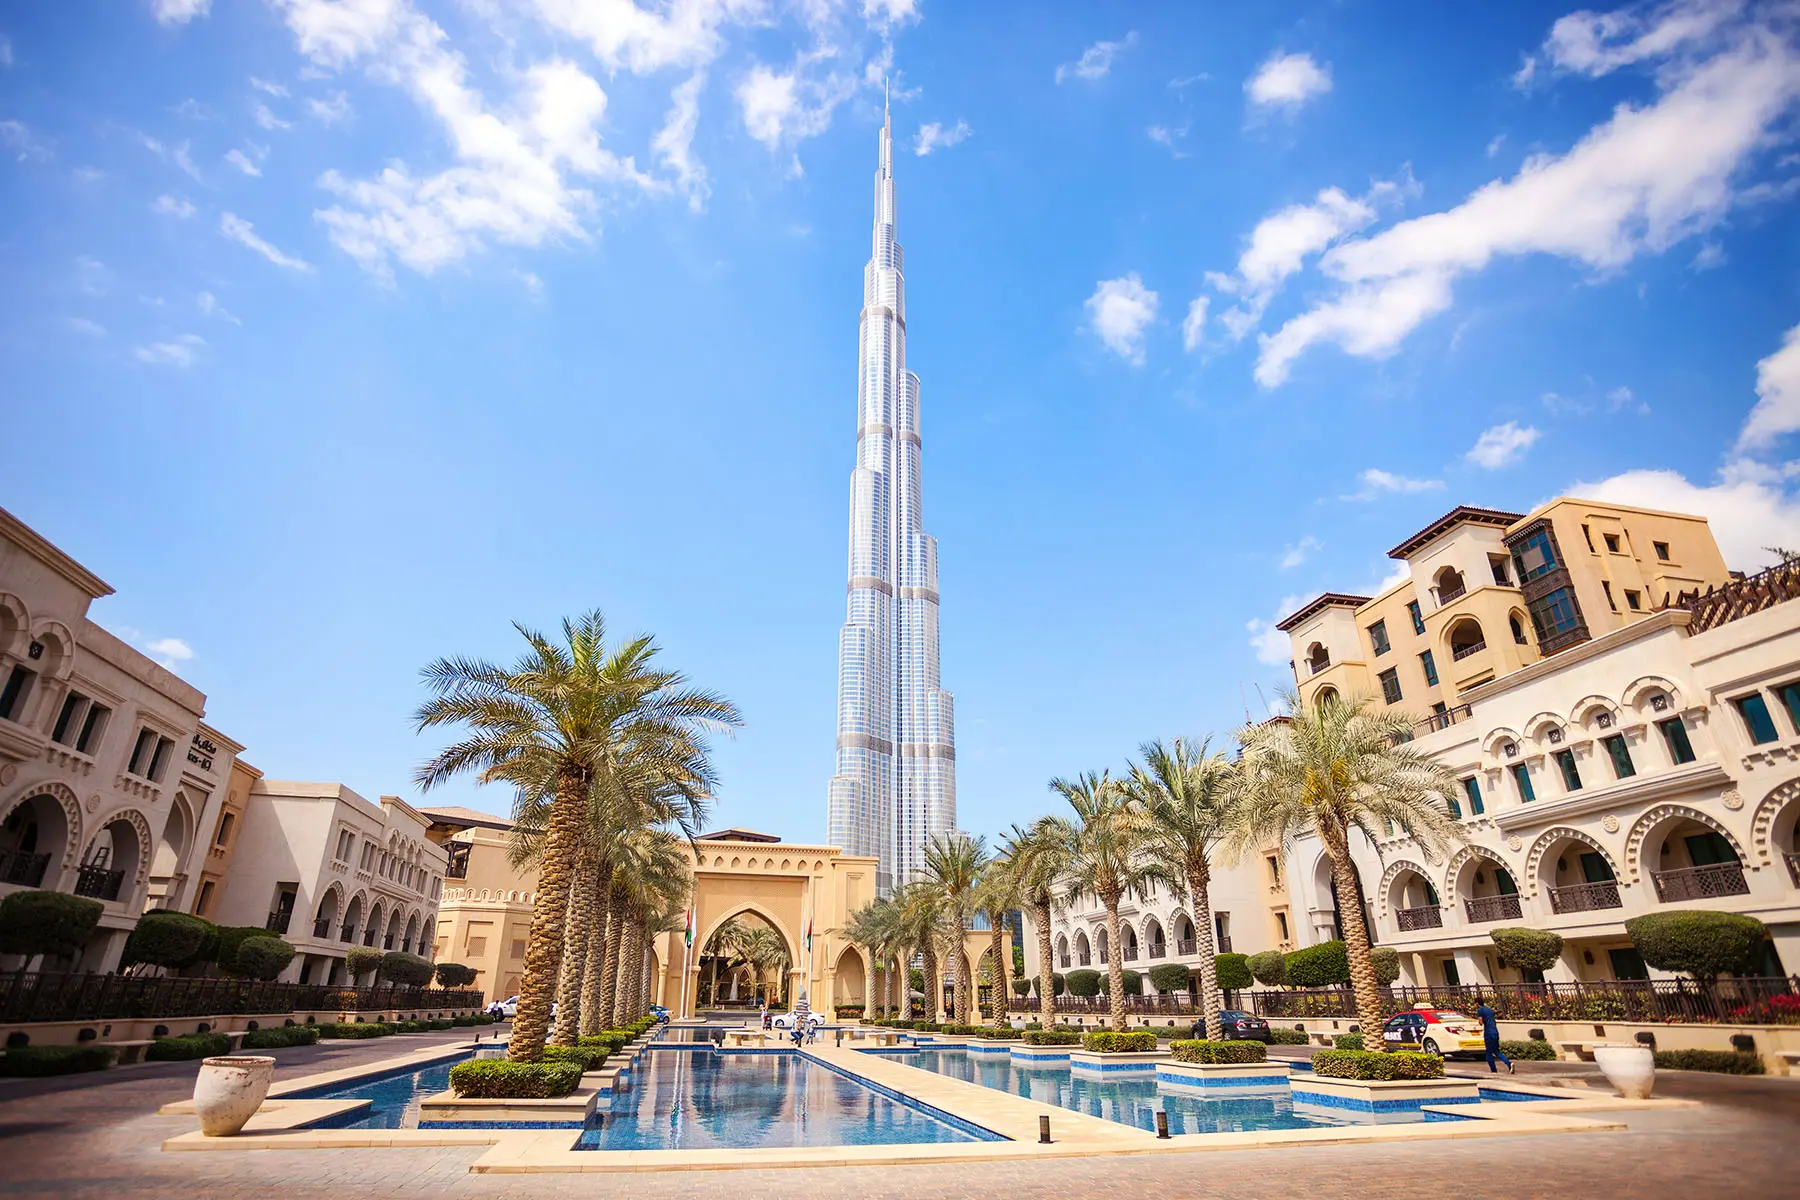 visit the Burj khalifa